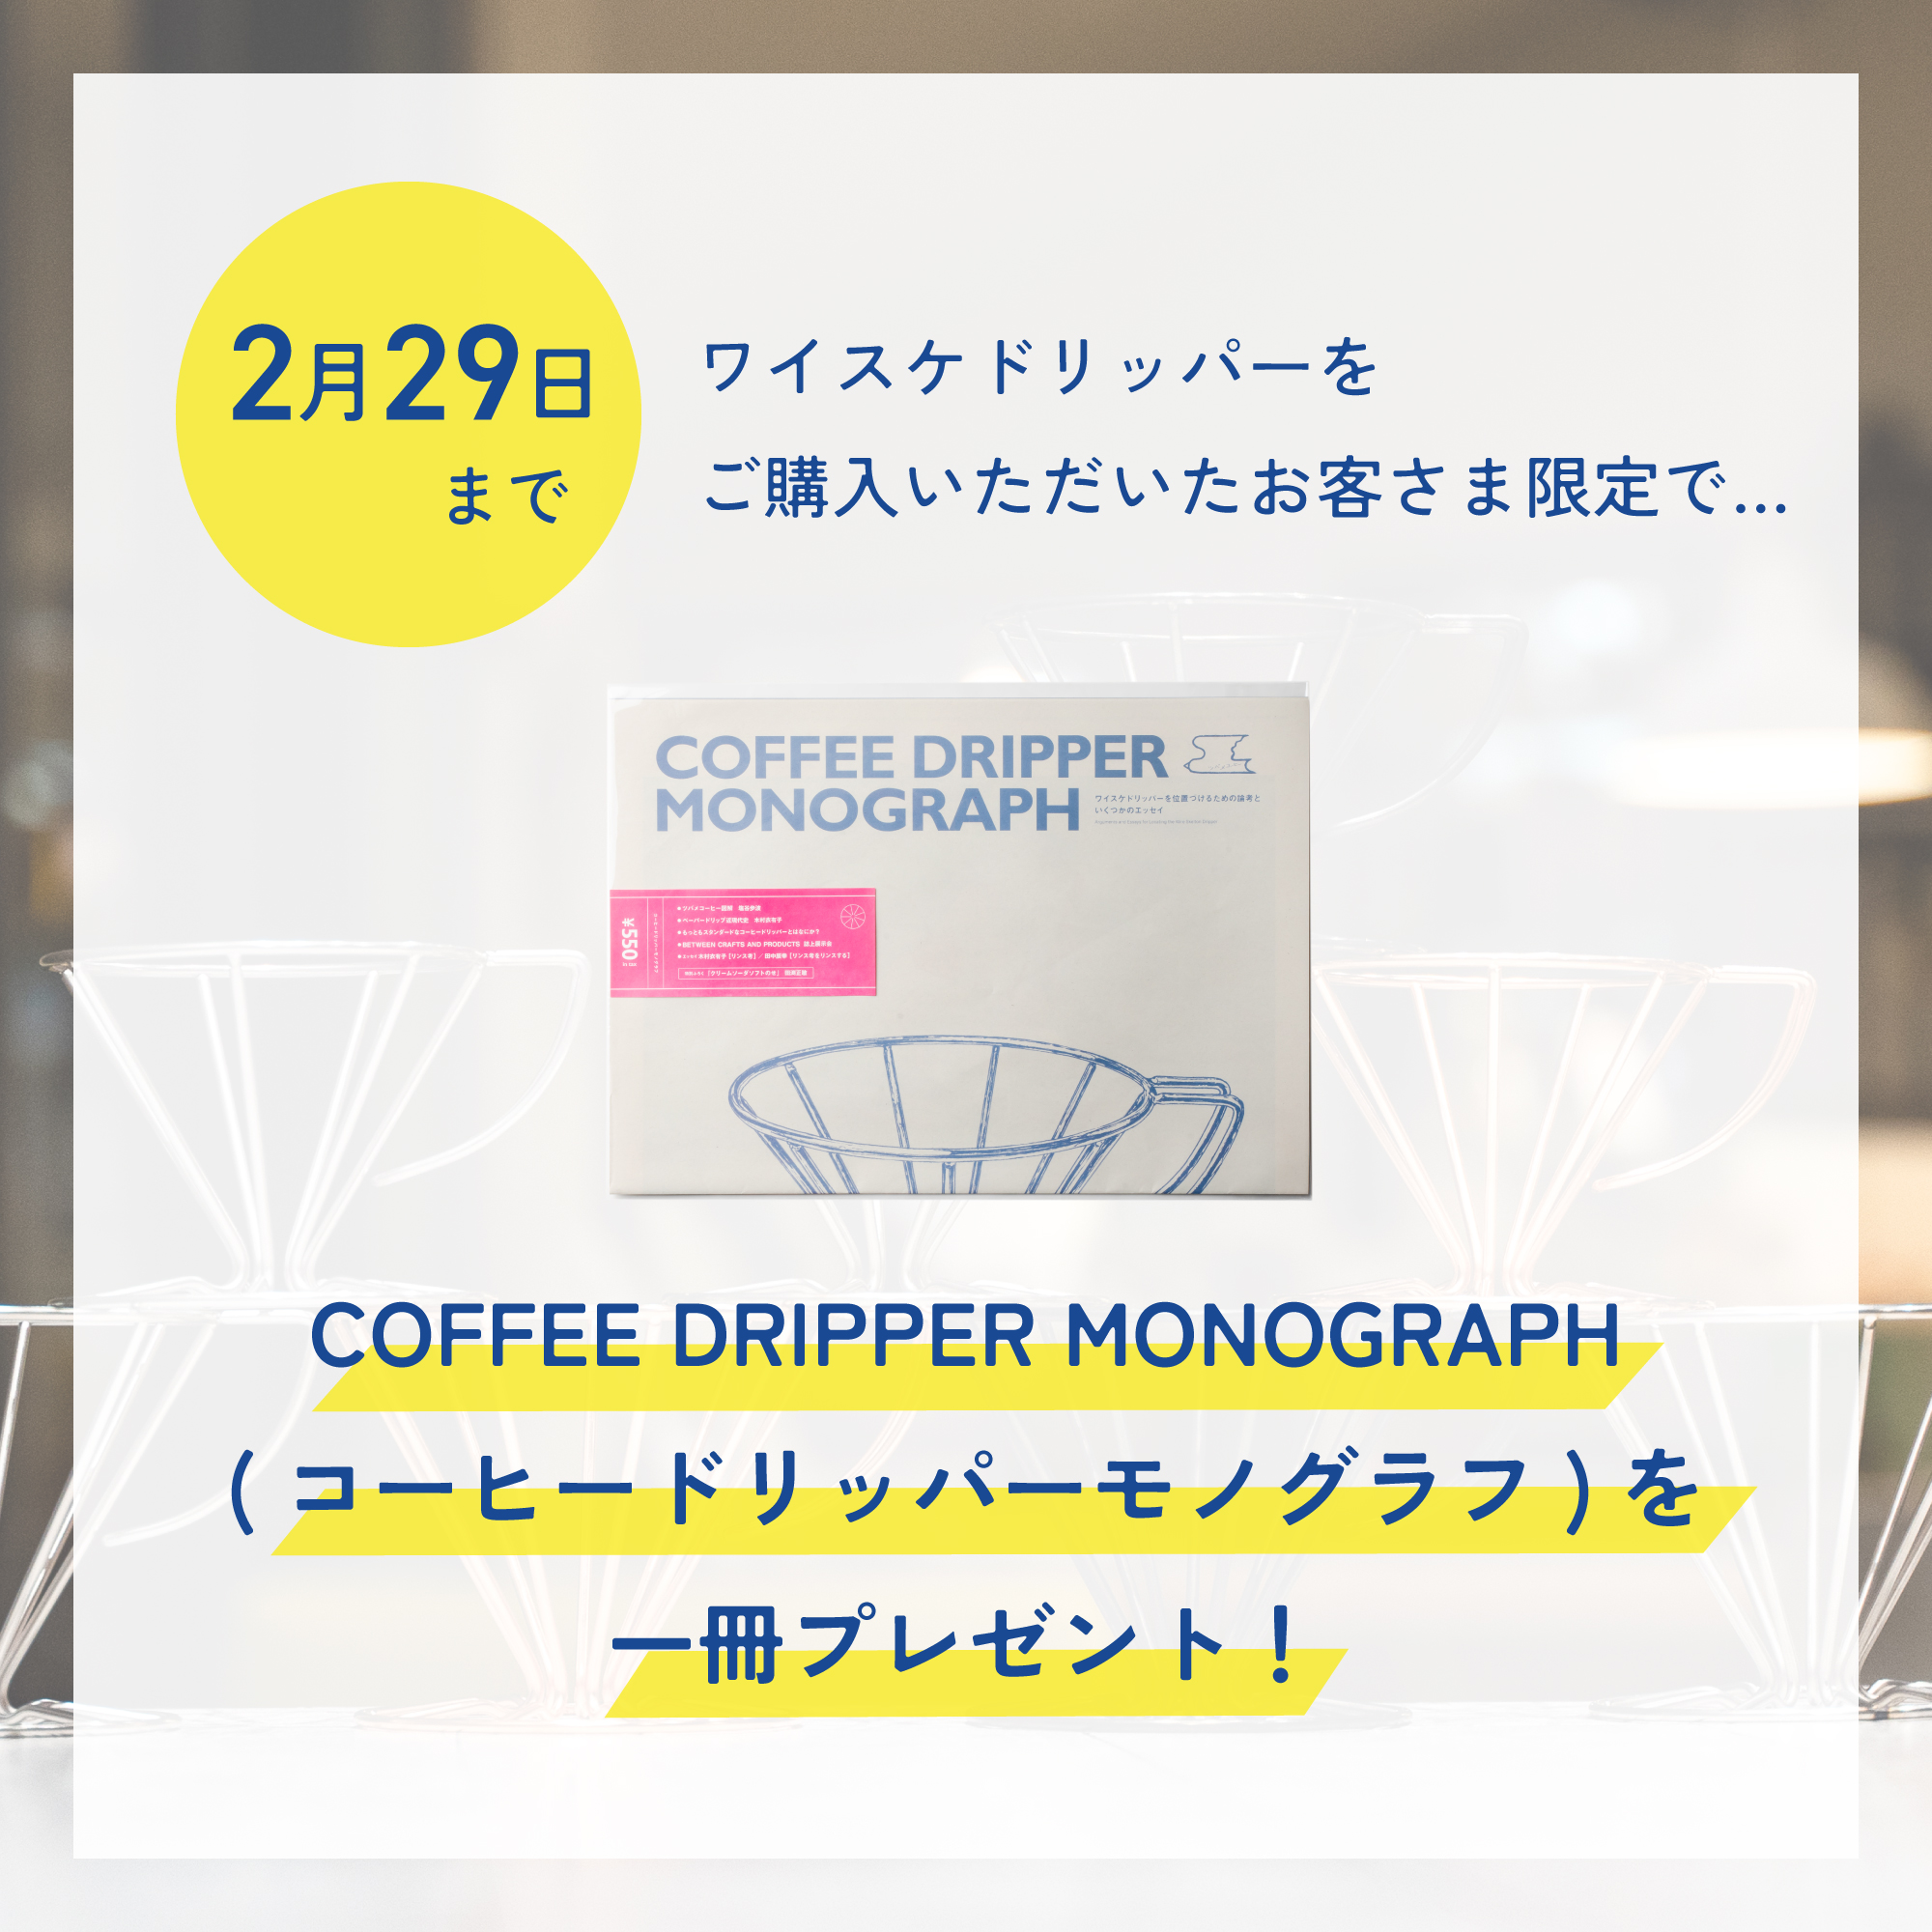 ワイスケドリッパーお買い上げのお客様に『COFFEE DRIPPER MONOGRAPH』プレゼント